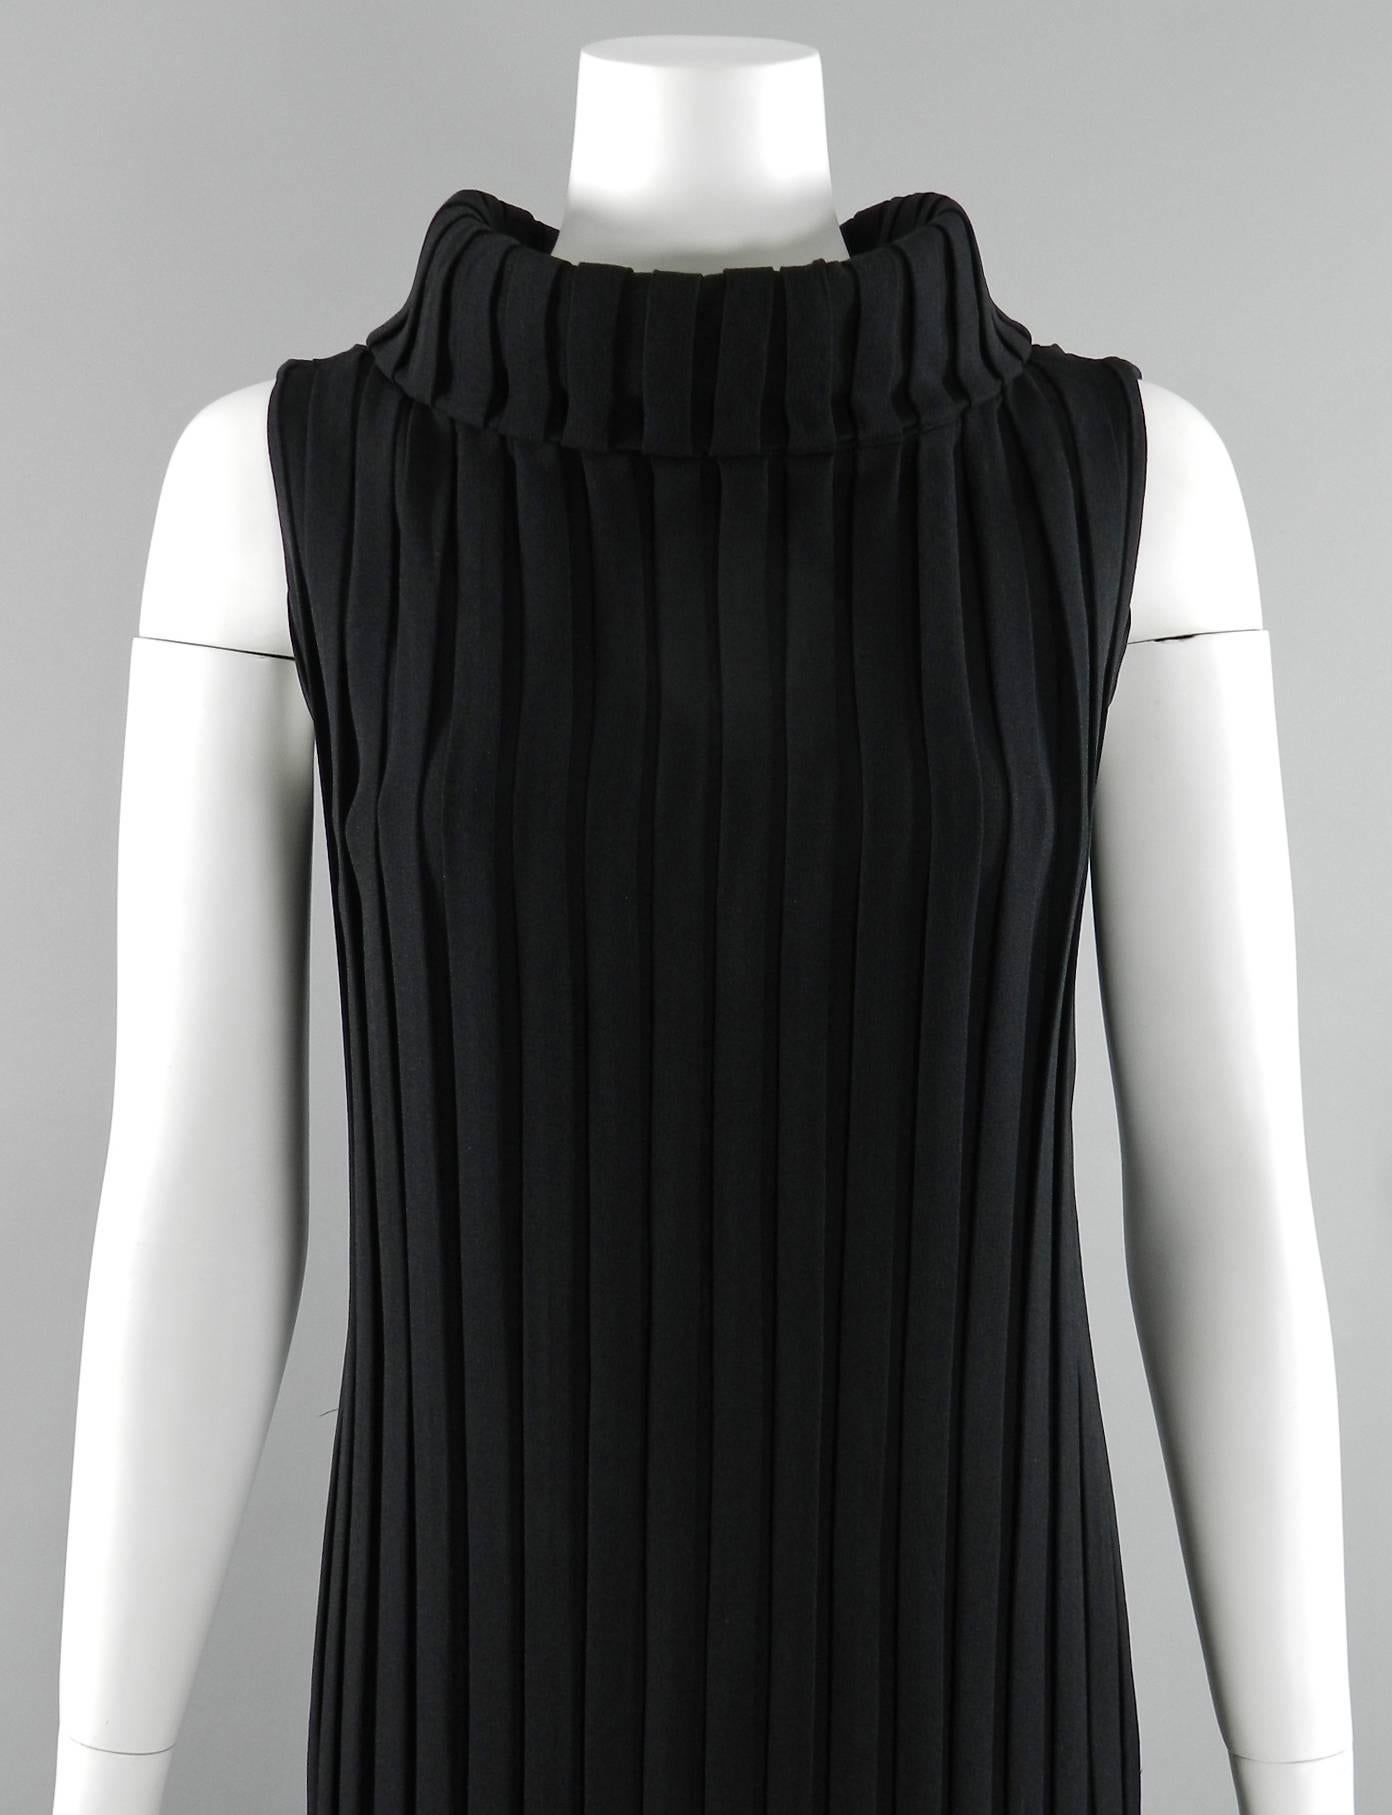 Mademoiselle Ricci by Nina Ricci 1960's Black Pleated Column Gown 1